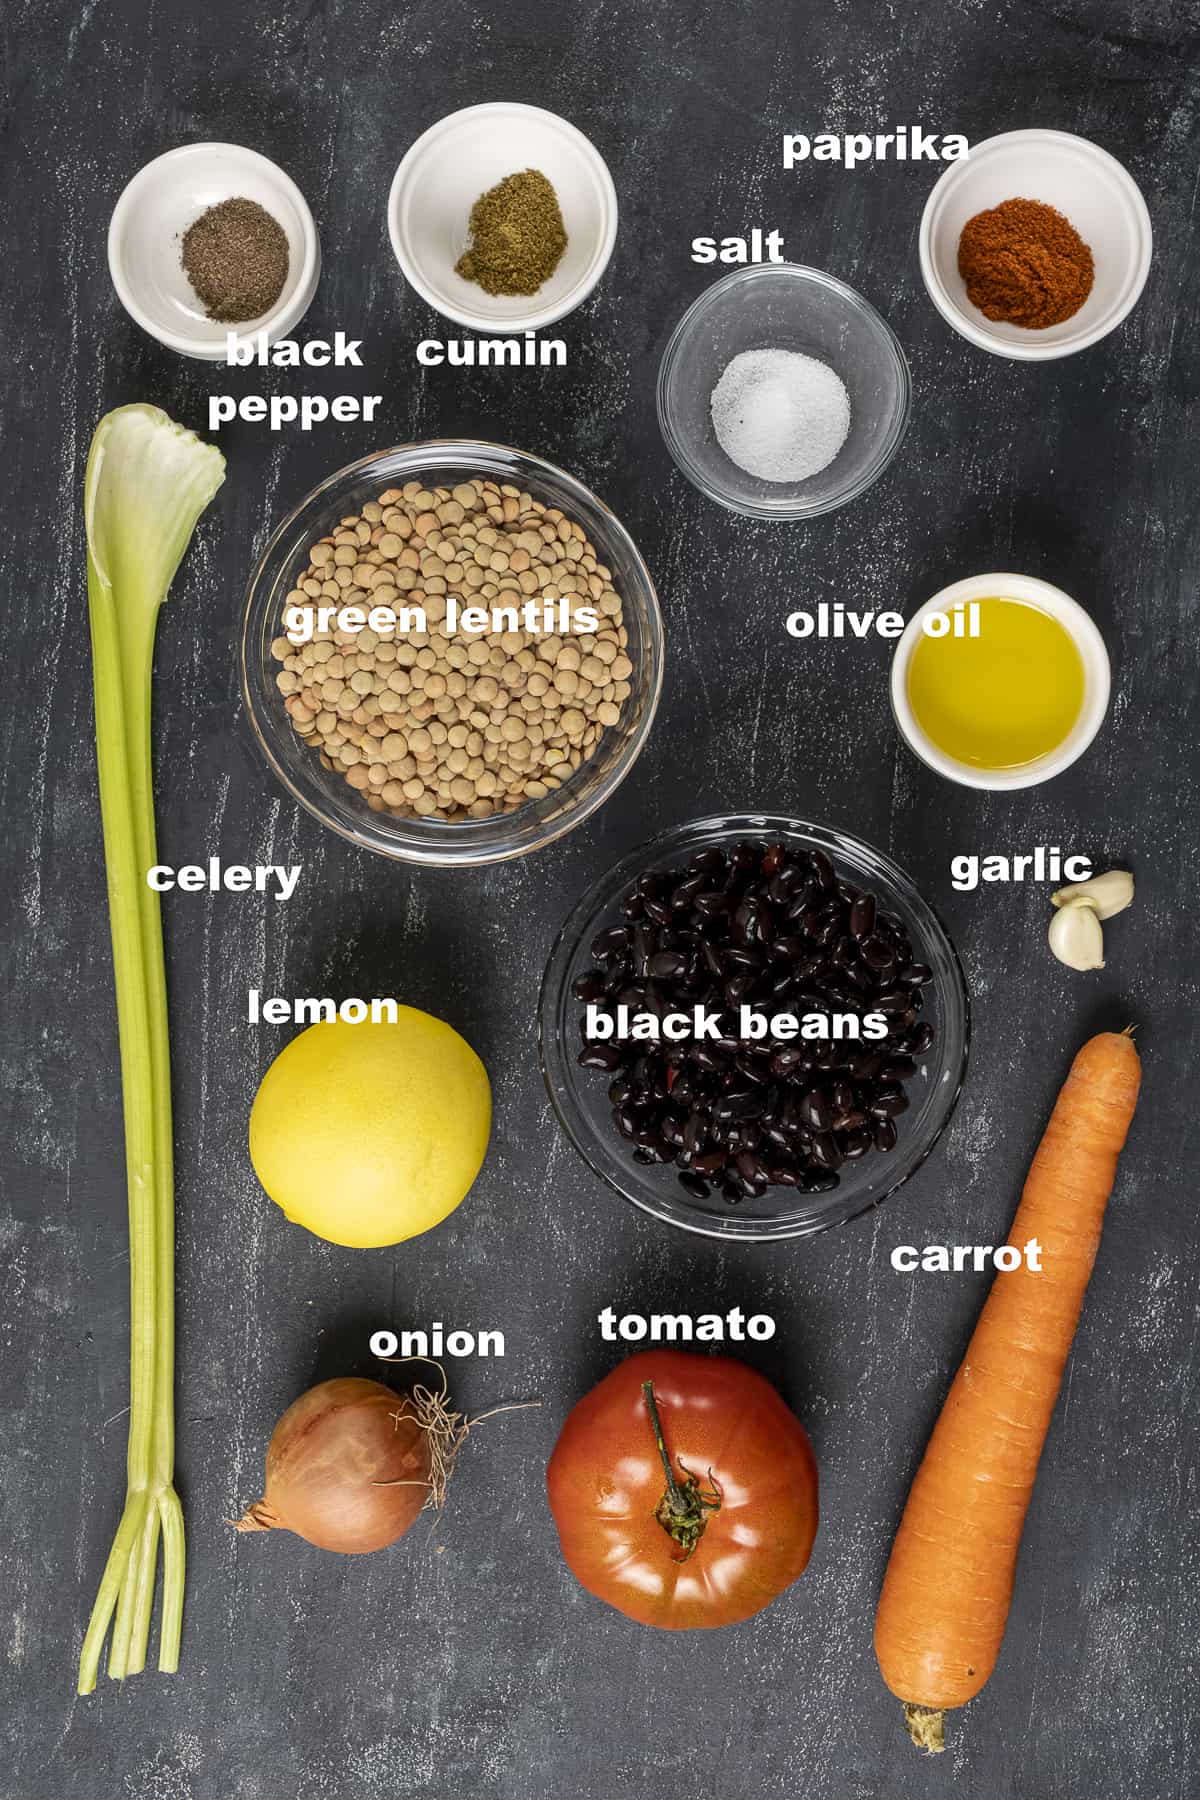 Green lentils, black beans, celery stalk, carrot, onion, tomato, lemon, spices on a dark background.